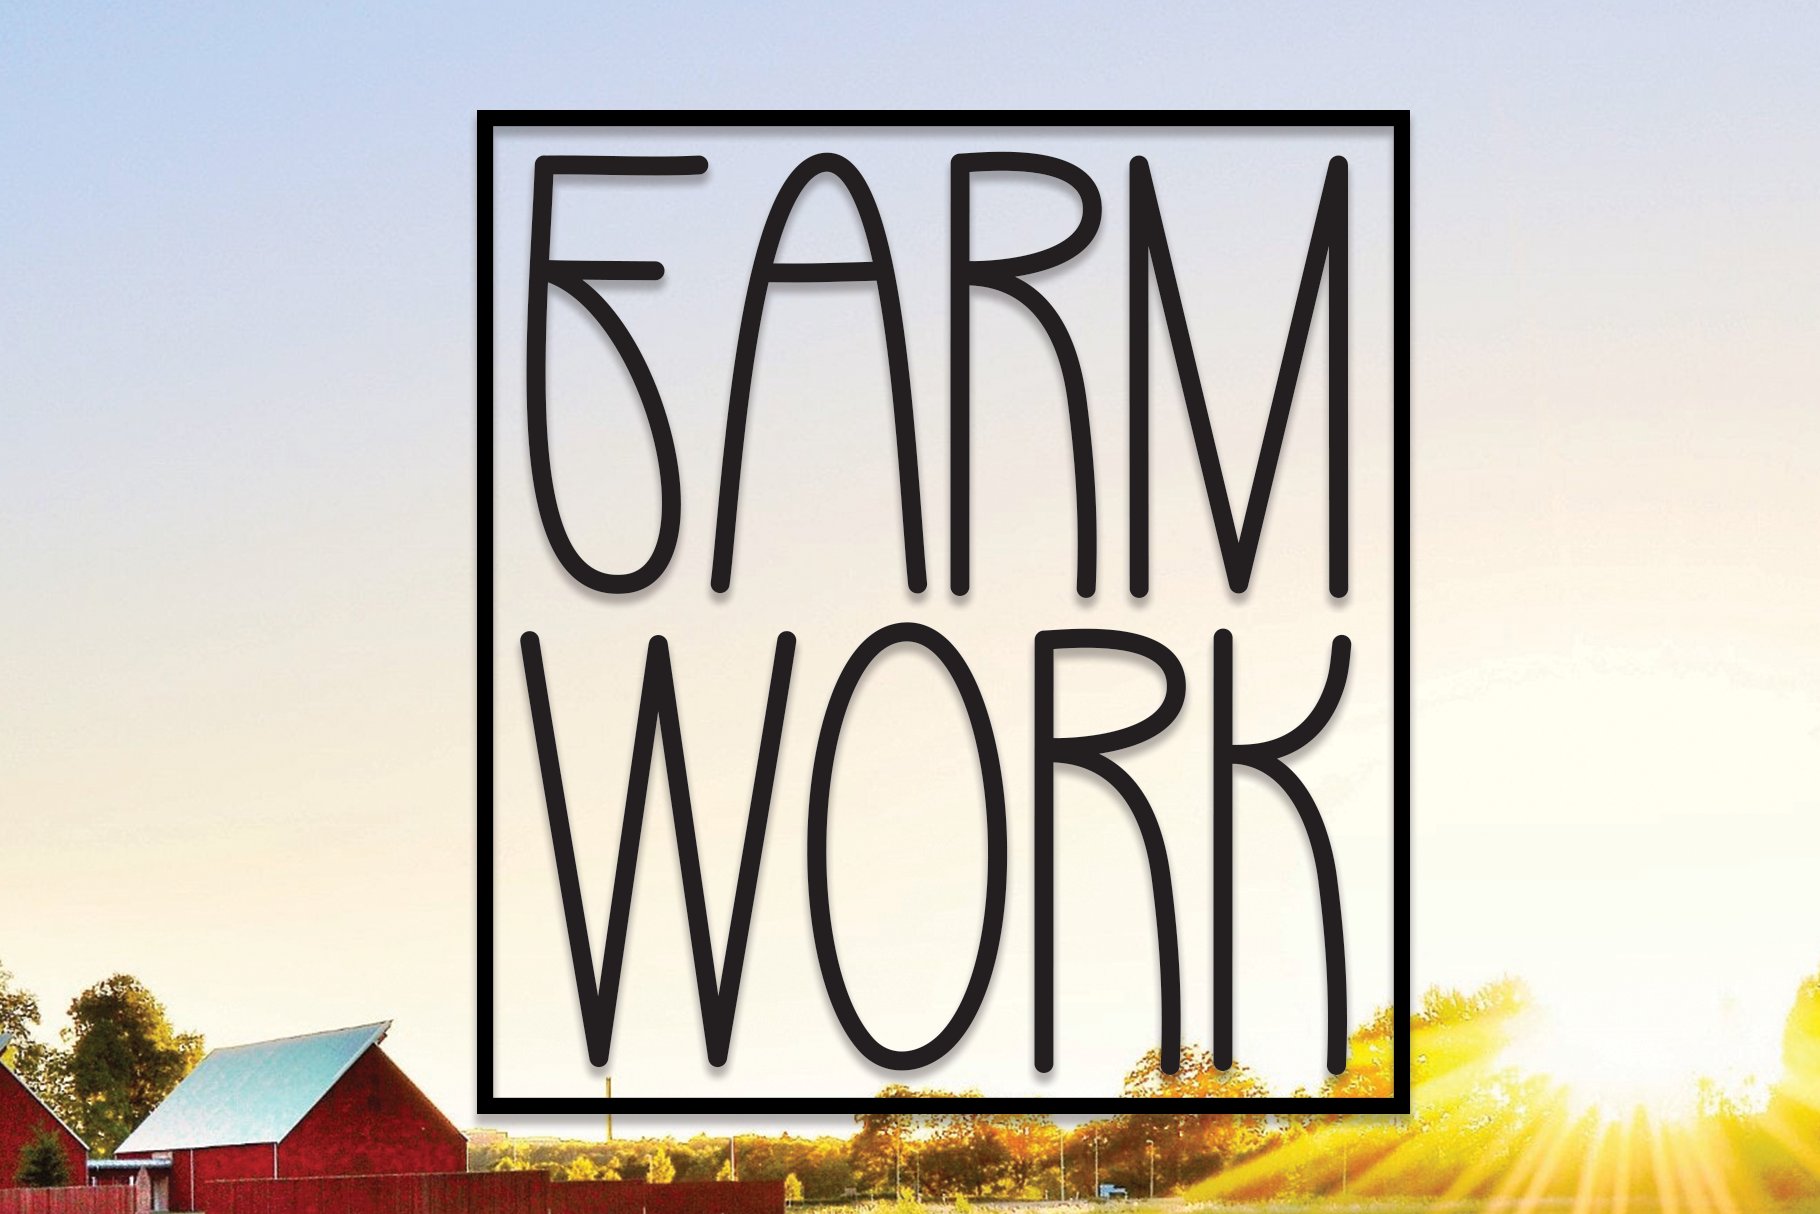 Farm Work | Script Font cover image.